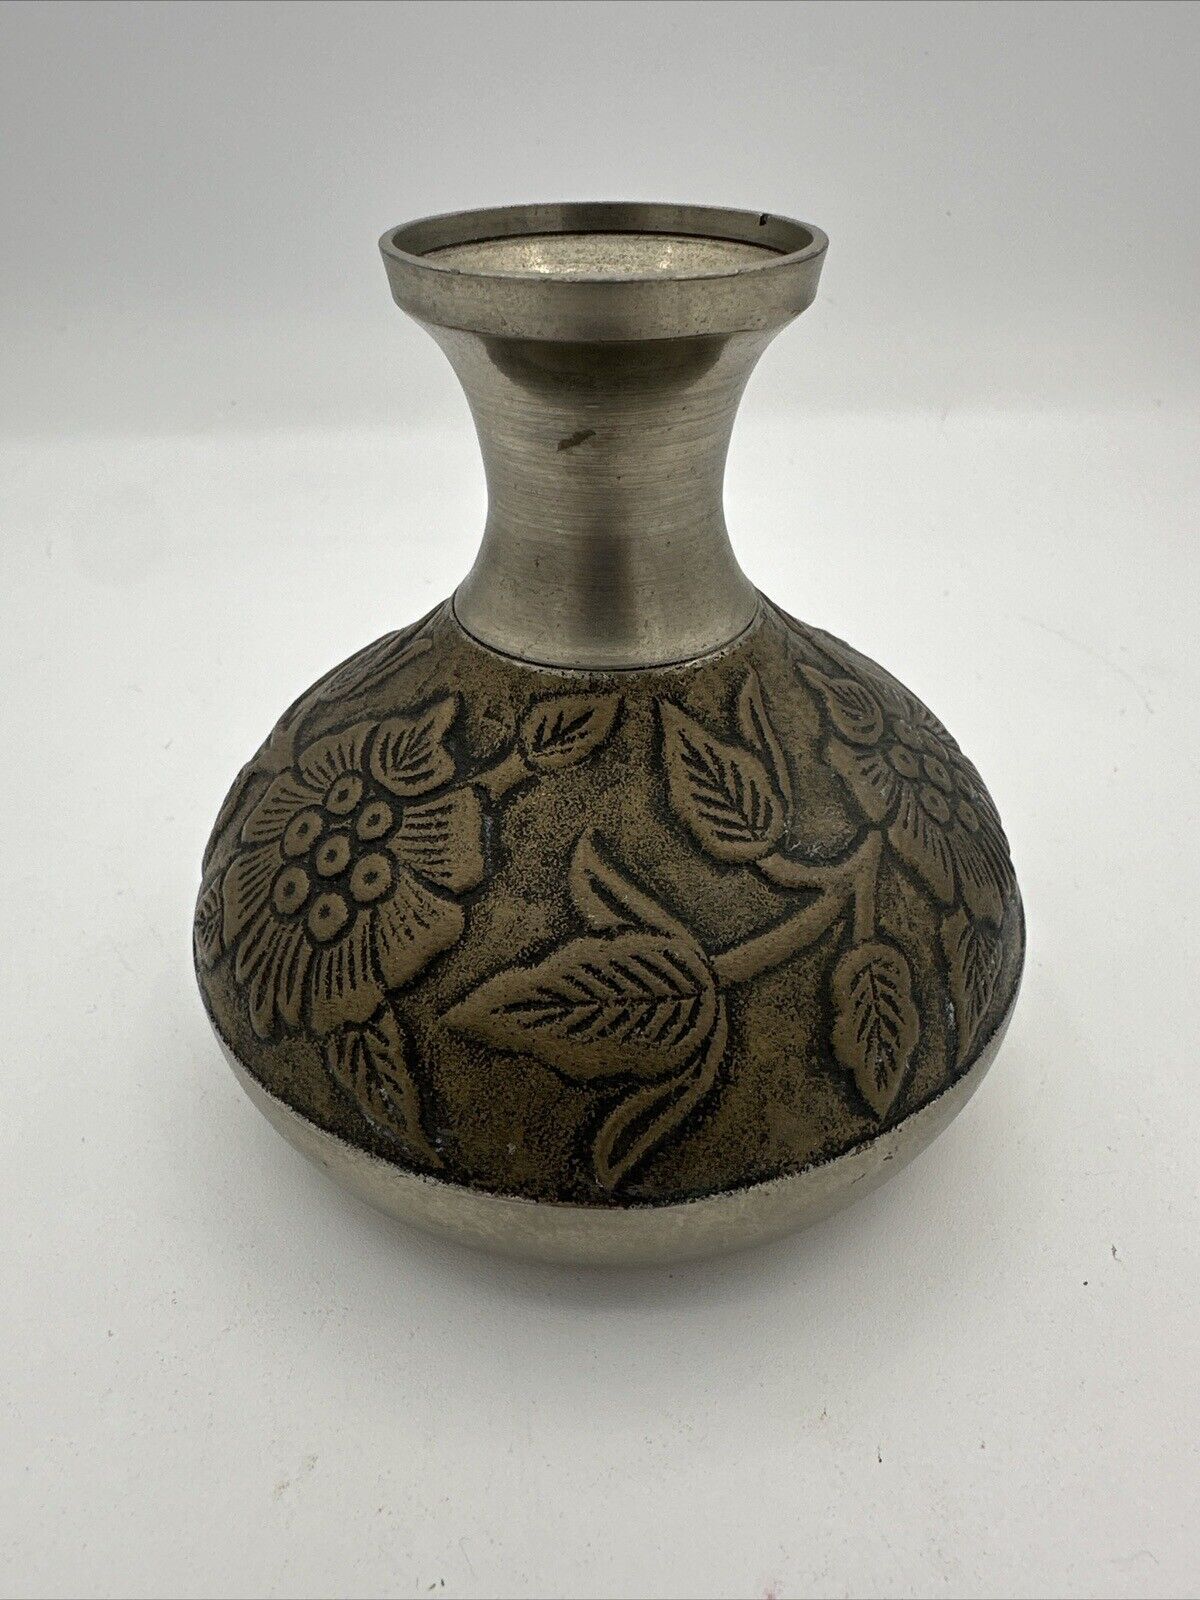 Vintage silver vase embossed, Antiqued brass floral design 5”H